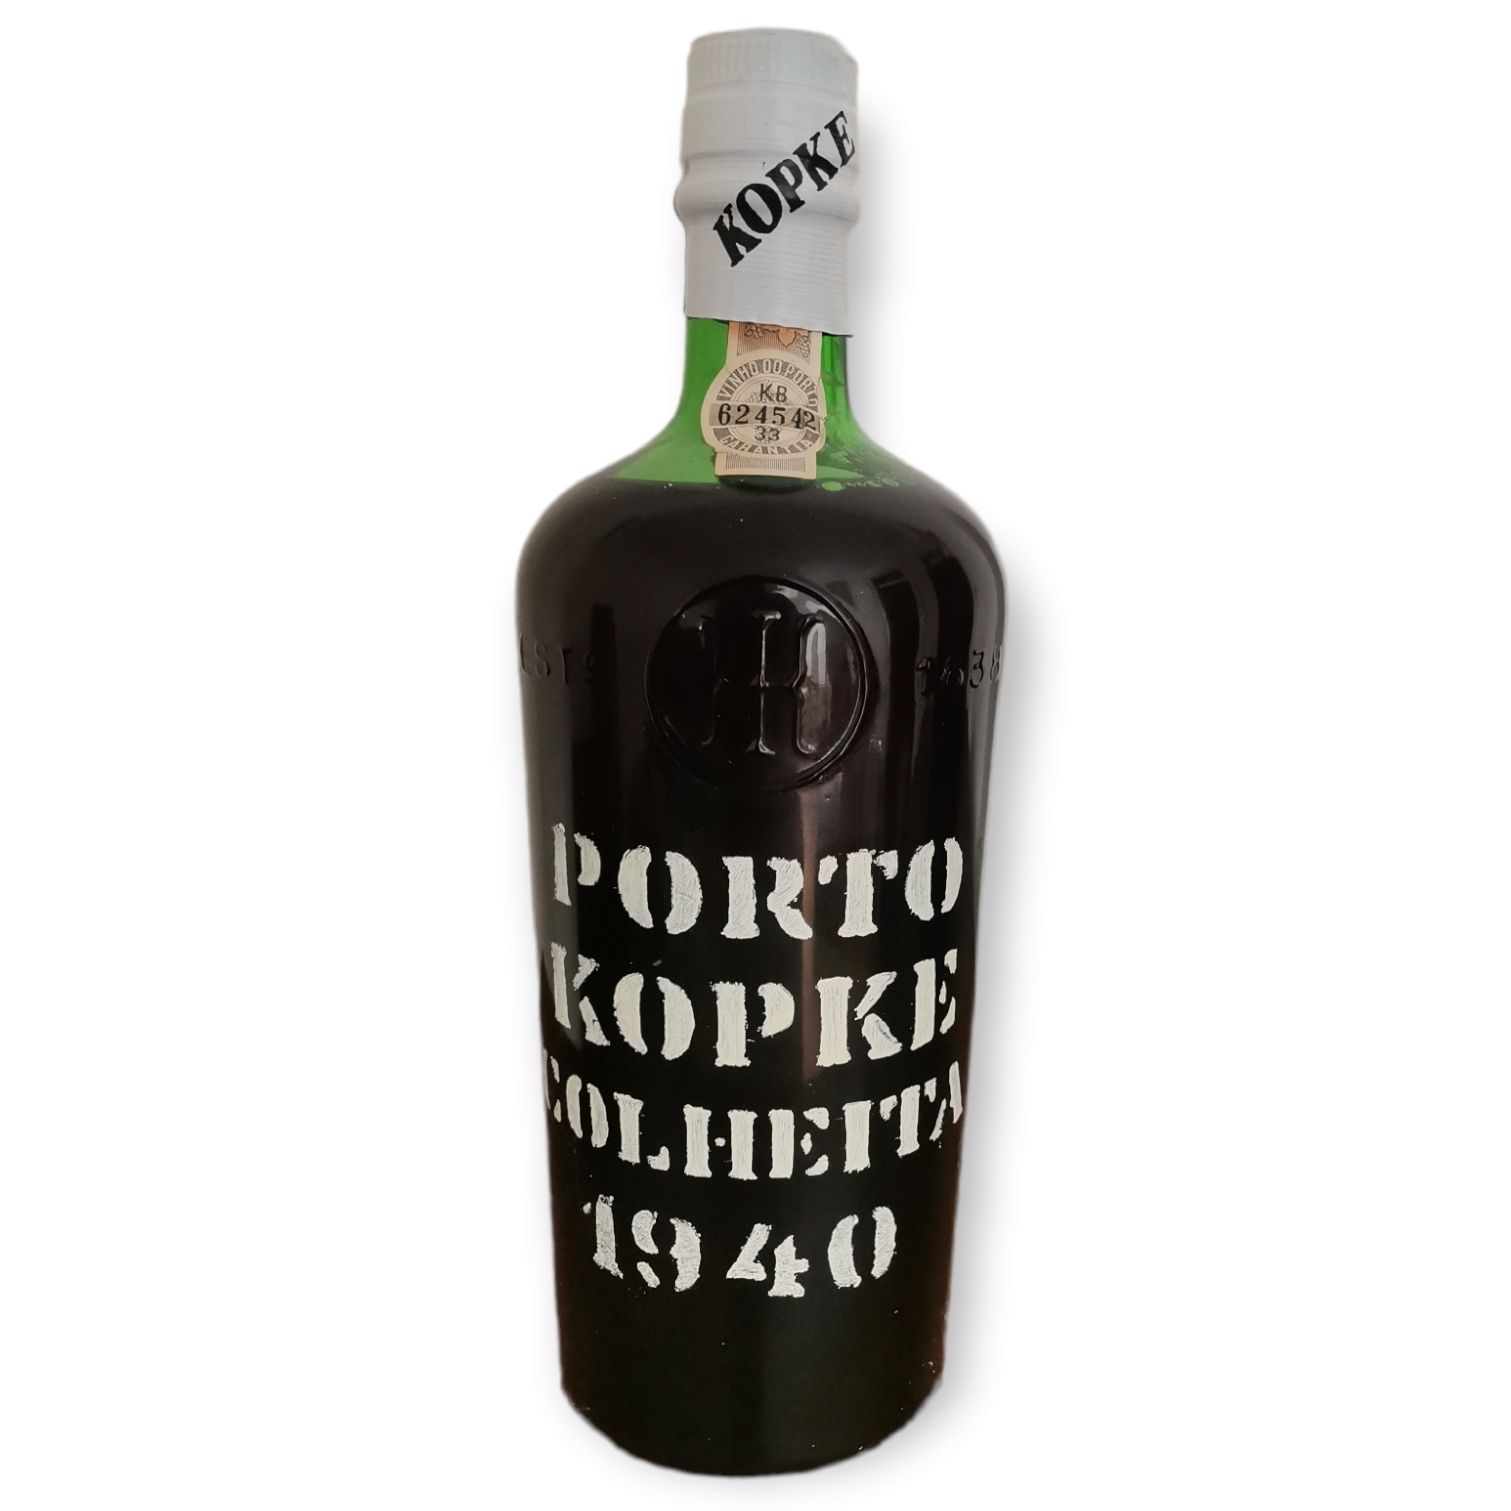 Kopke KOPKE Port wine bottle. Harvest of 1940, bottled in 1982.